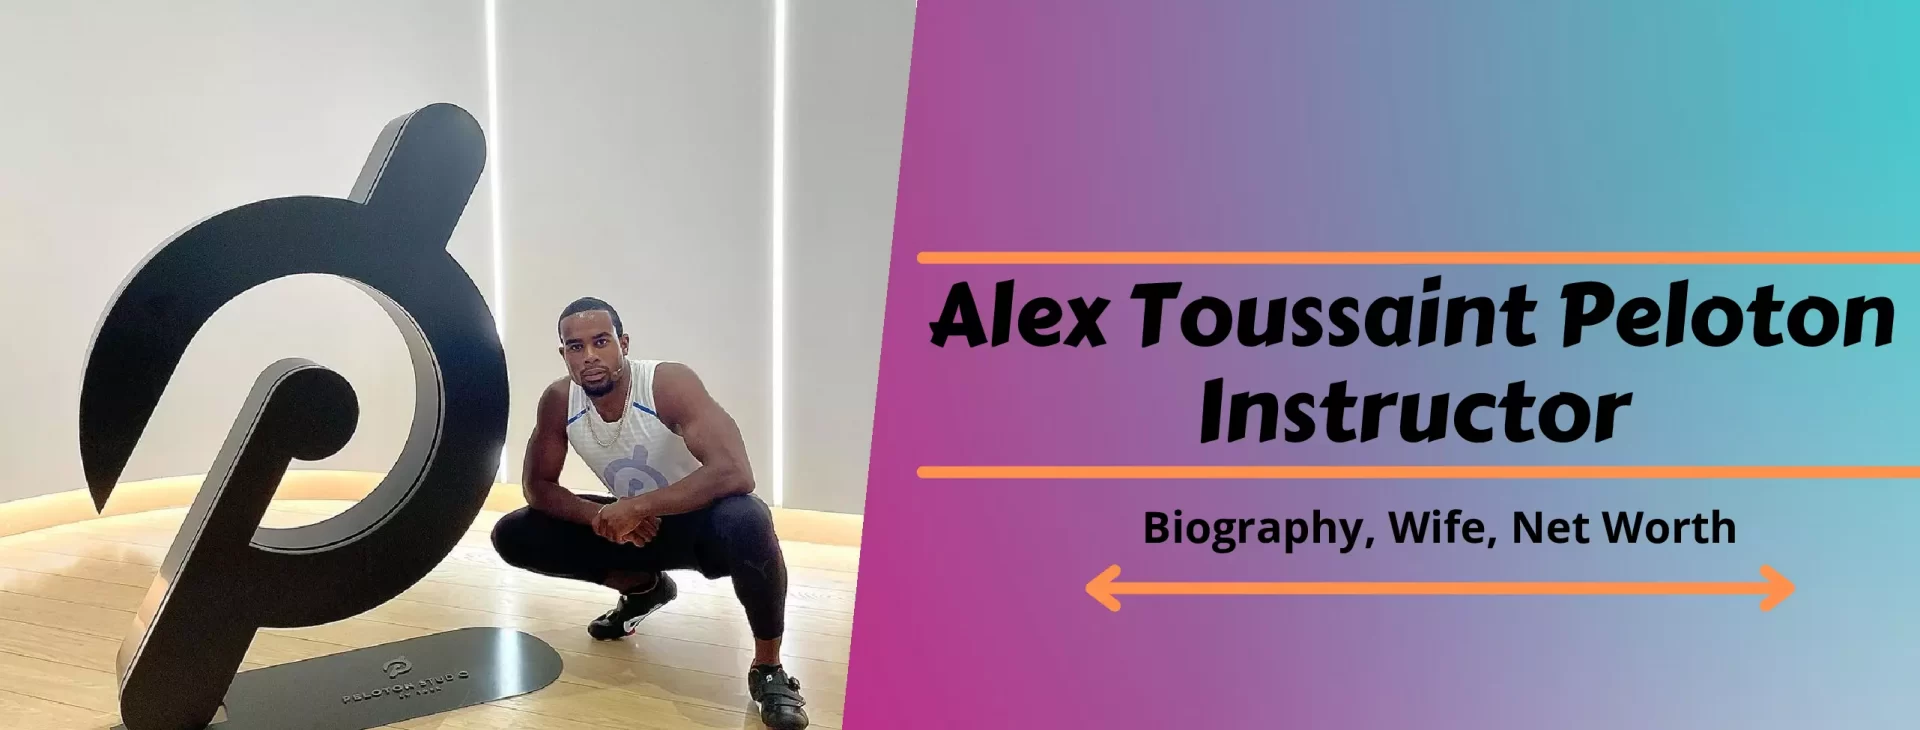 Alex Toussaint Peloton Instructor